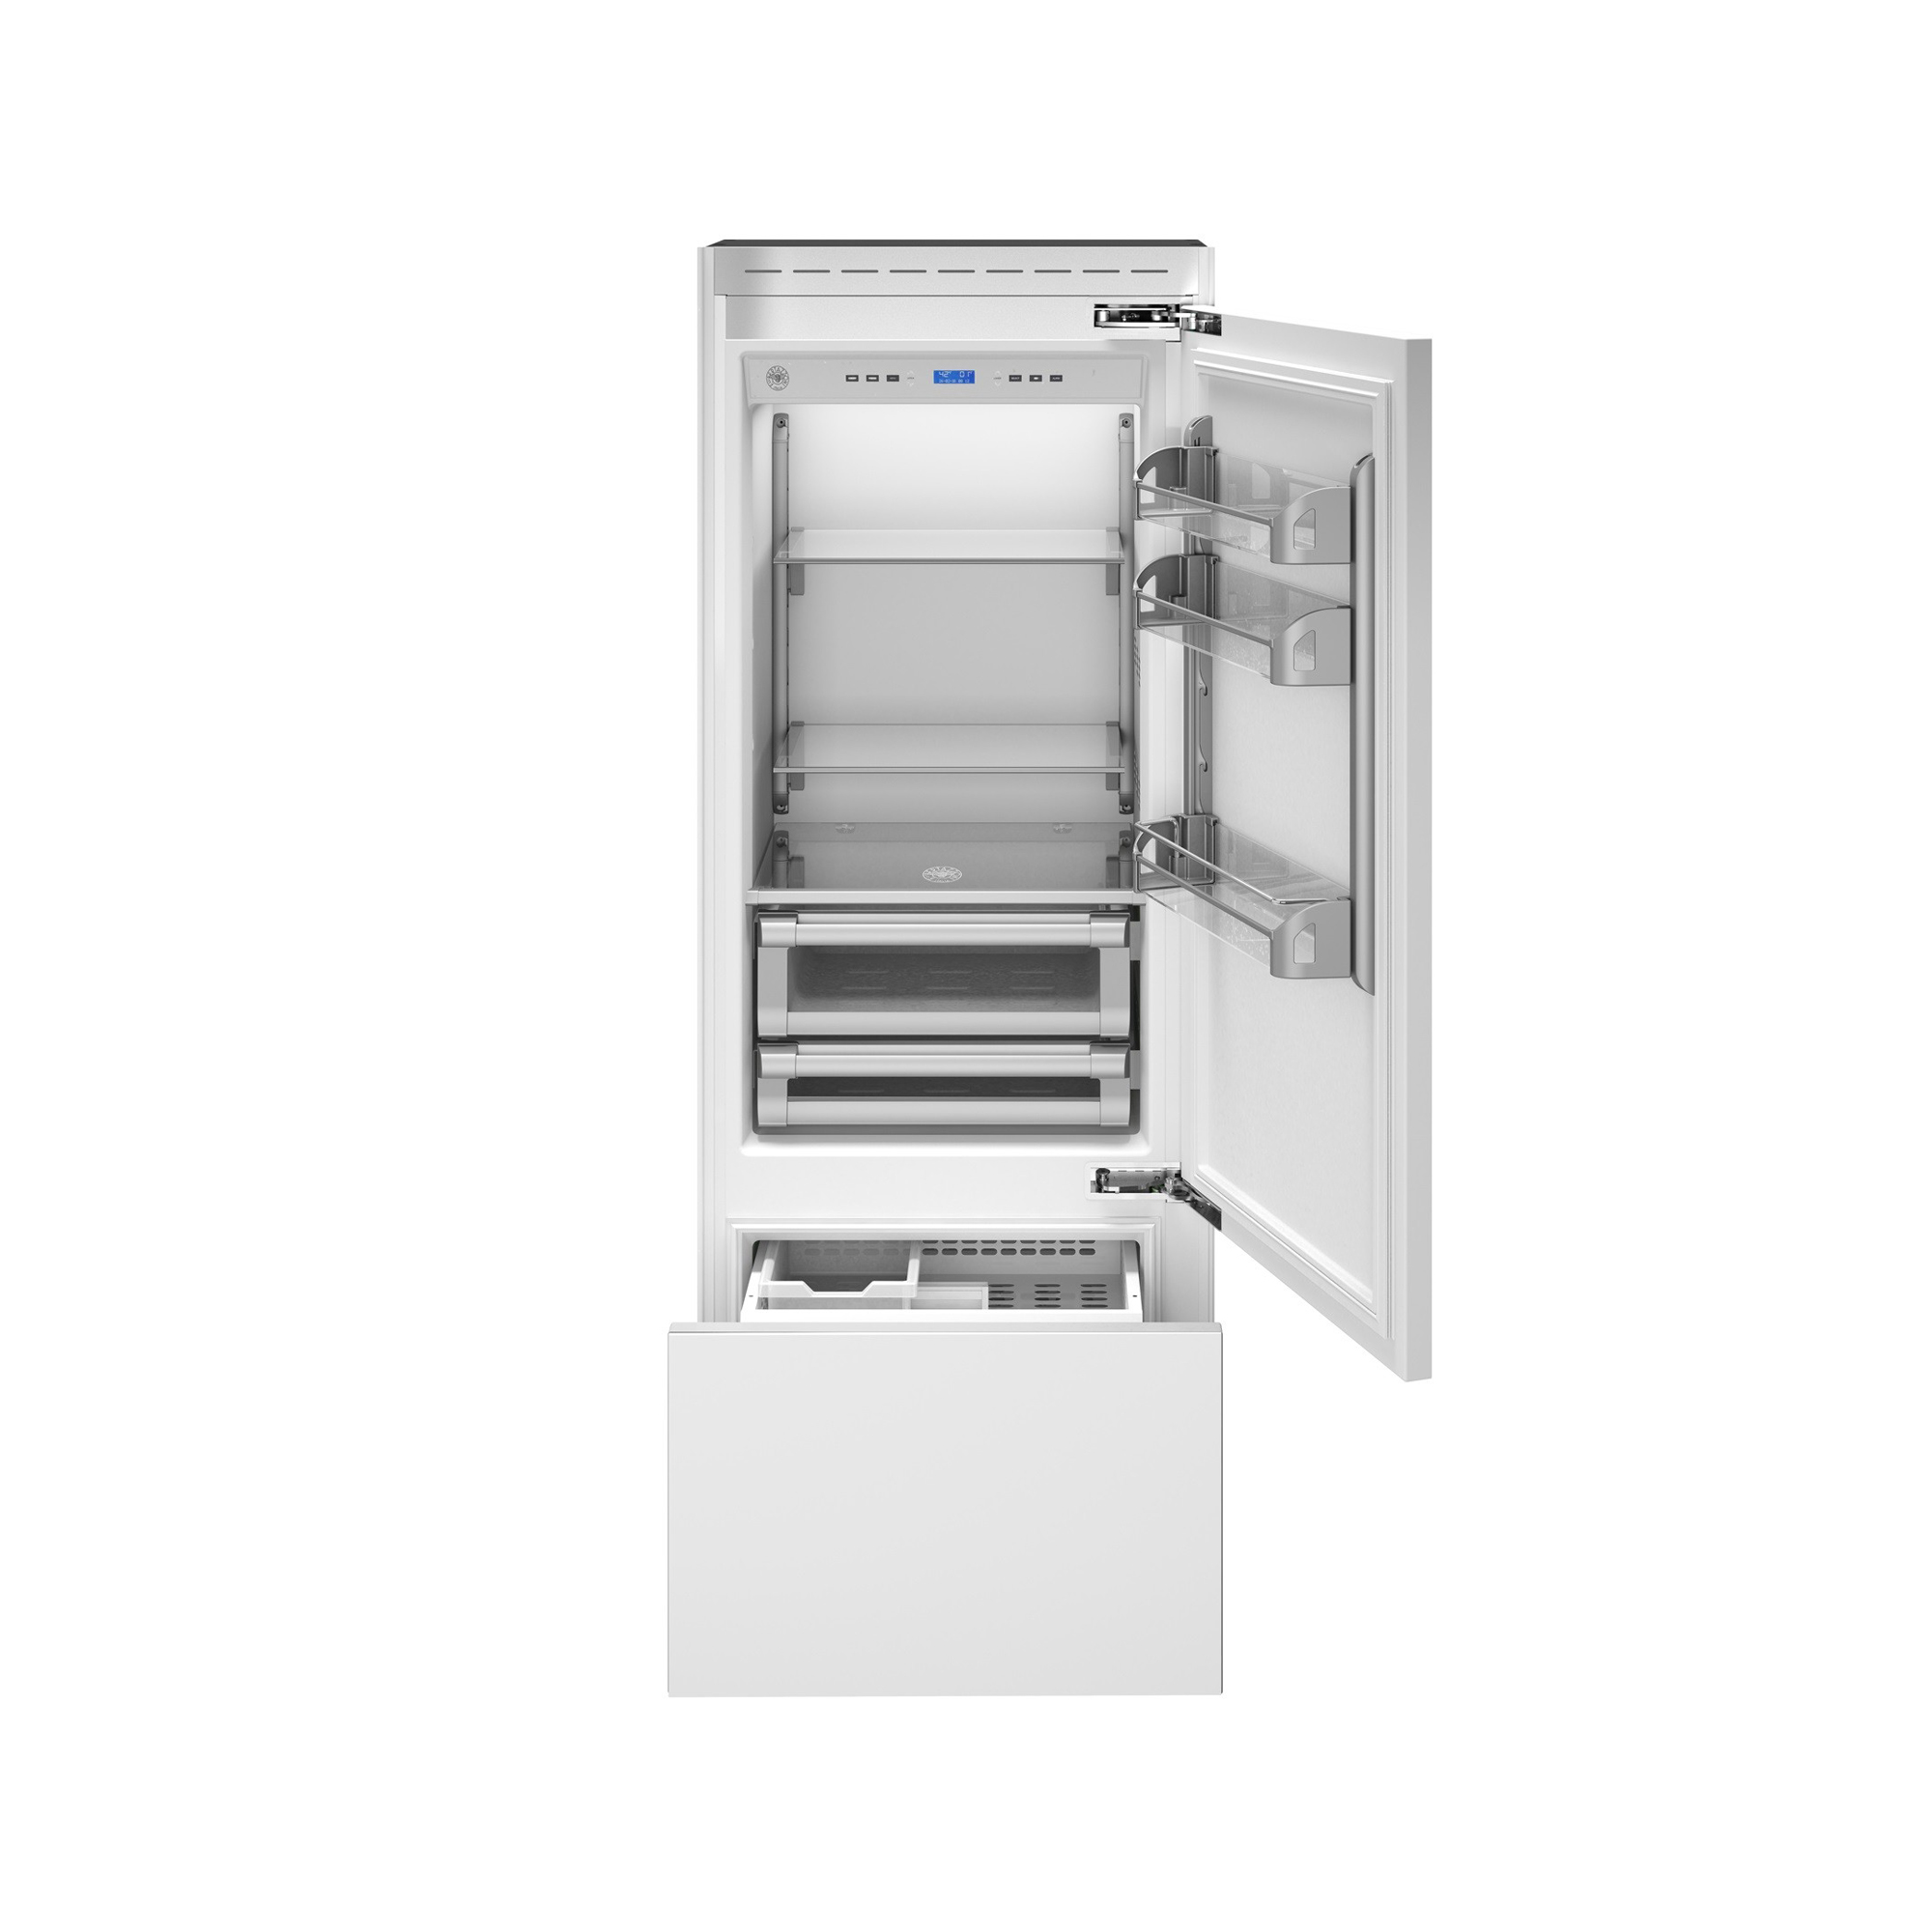 Refrigerador Bottom Lofra com freezer Professional abertura para direita 75 cm 473 litros inox 220v